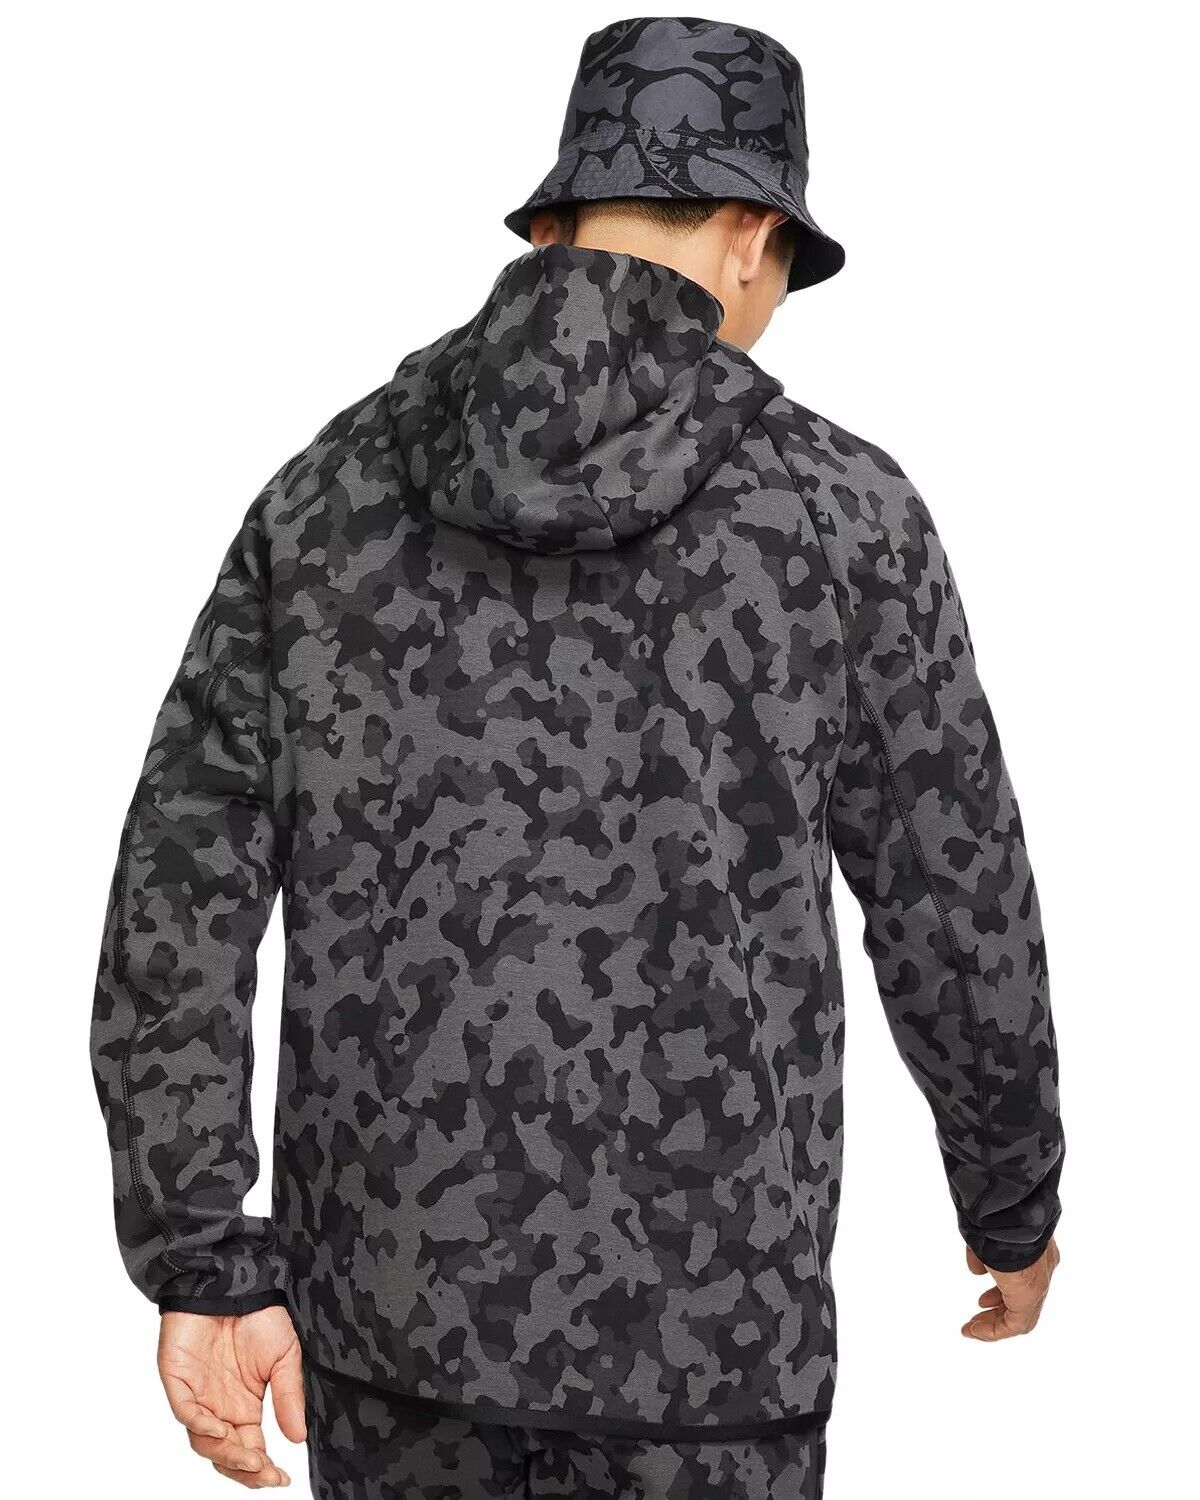 Men's Nike Tech Fleece AOP Camo Full-Zip Hoodie, CJ5975 010 Multi Sizes Black